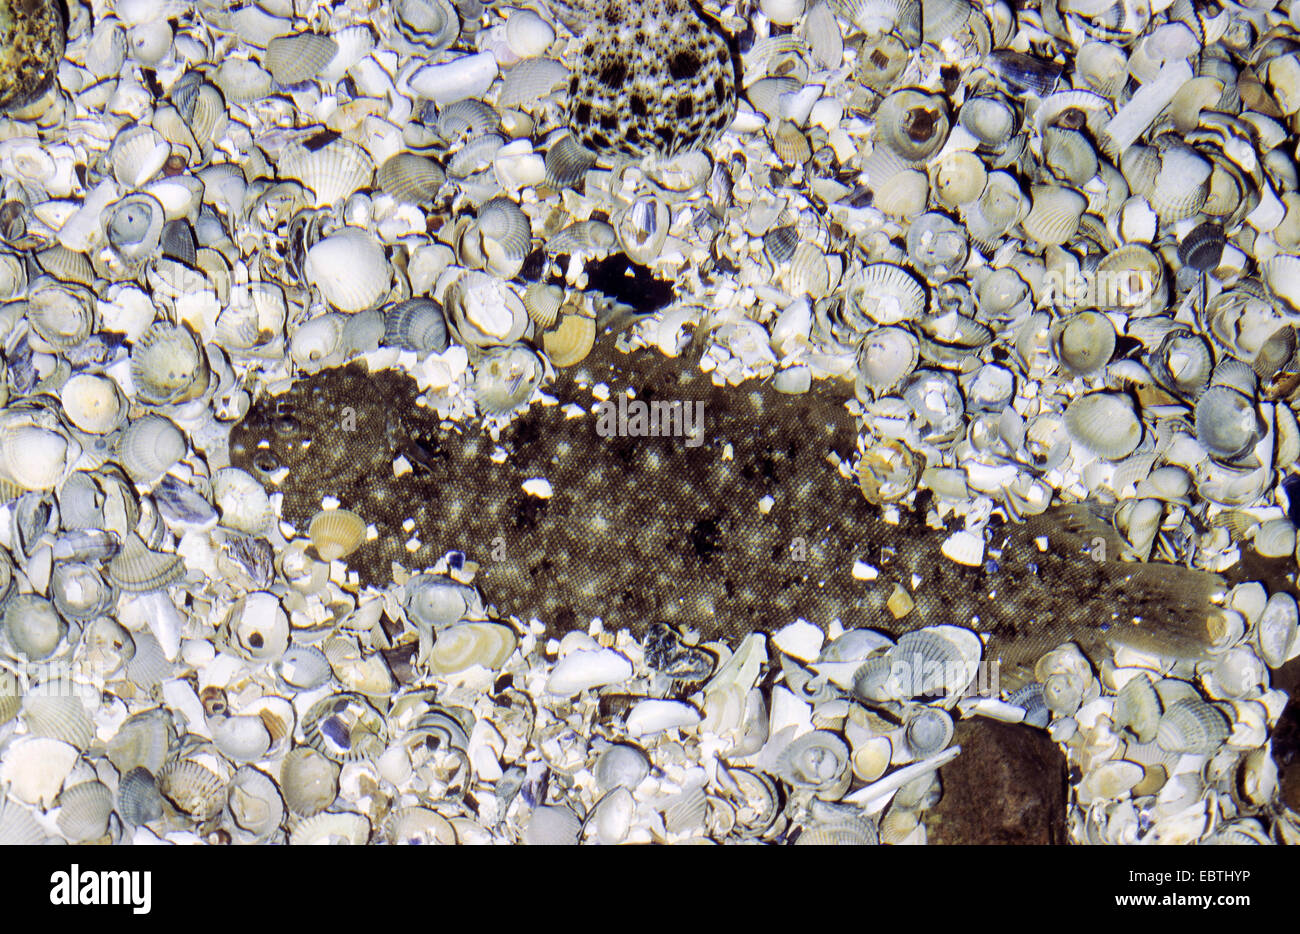 La sole commune (la sole (Solea vulgaris), Solea solea), creusé dans la moitié parmi les coquillages au fond de la mer Banque D'Images